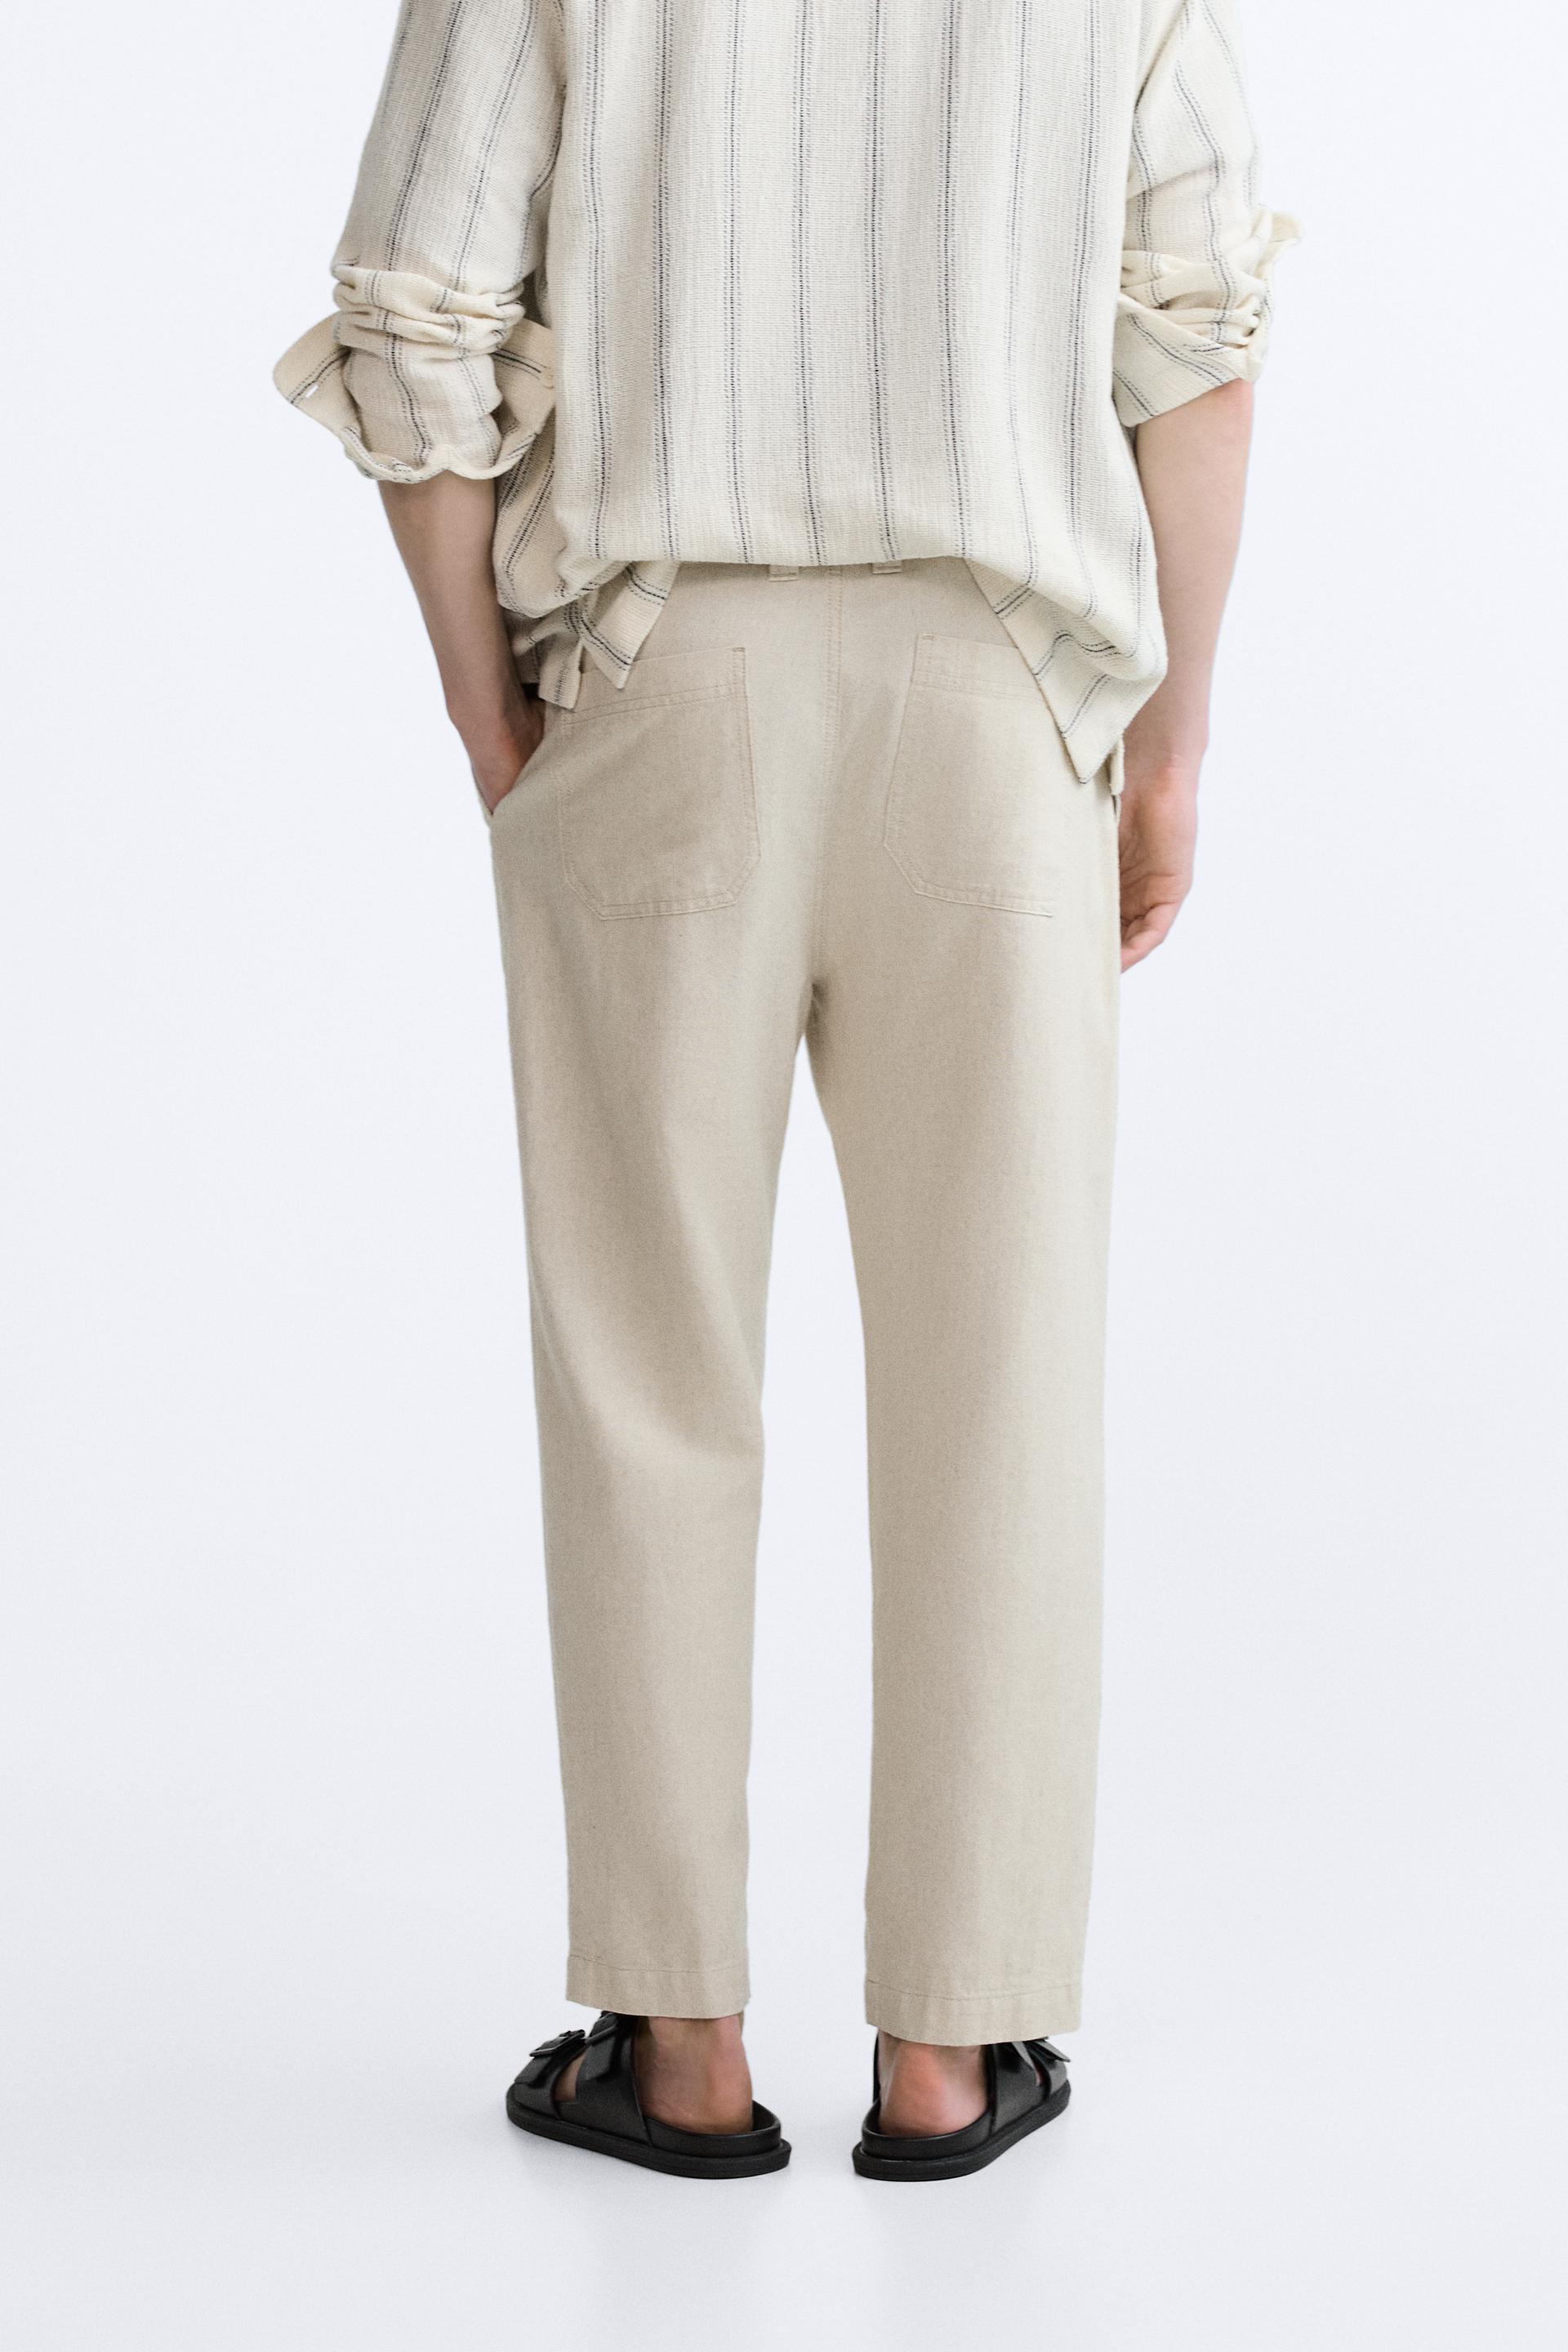 Buy Beige Tie-up Waist Ikat Linen Wrap Pants Online at Jaypore.com